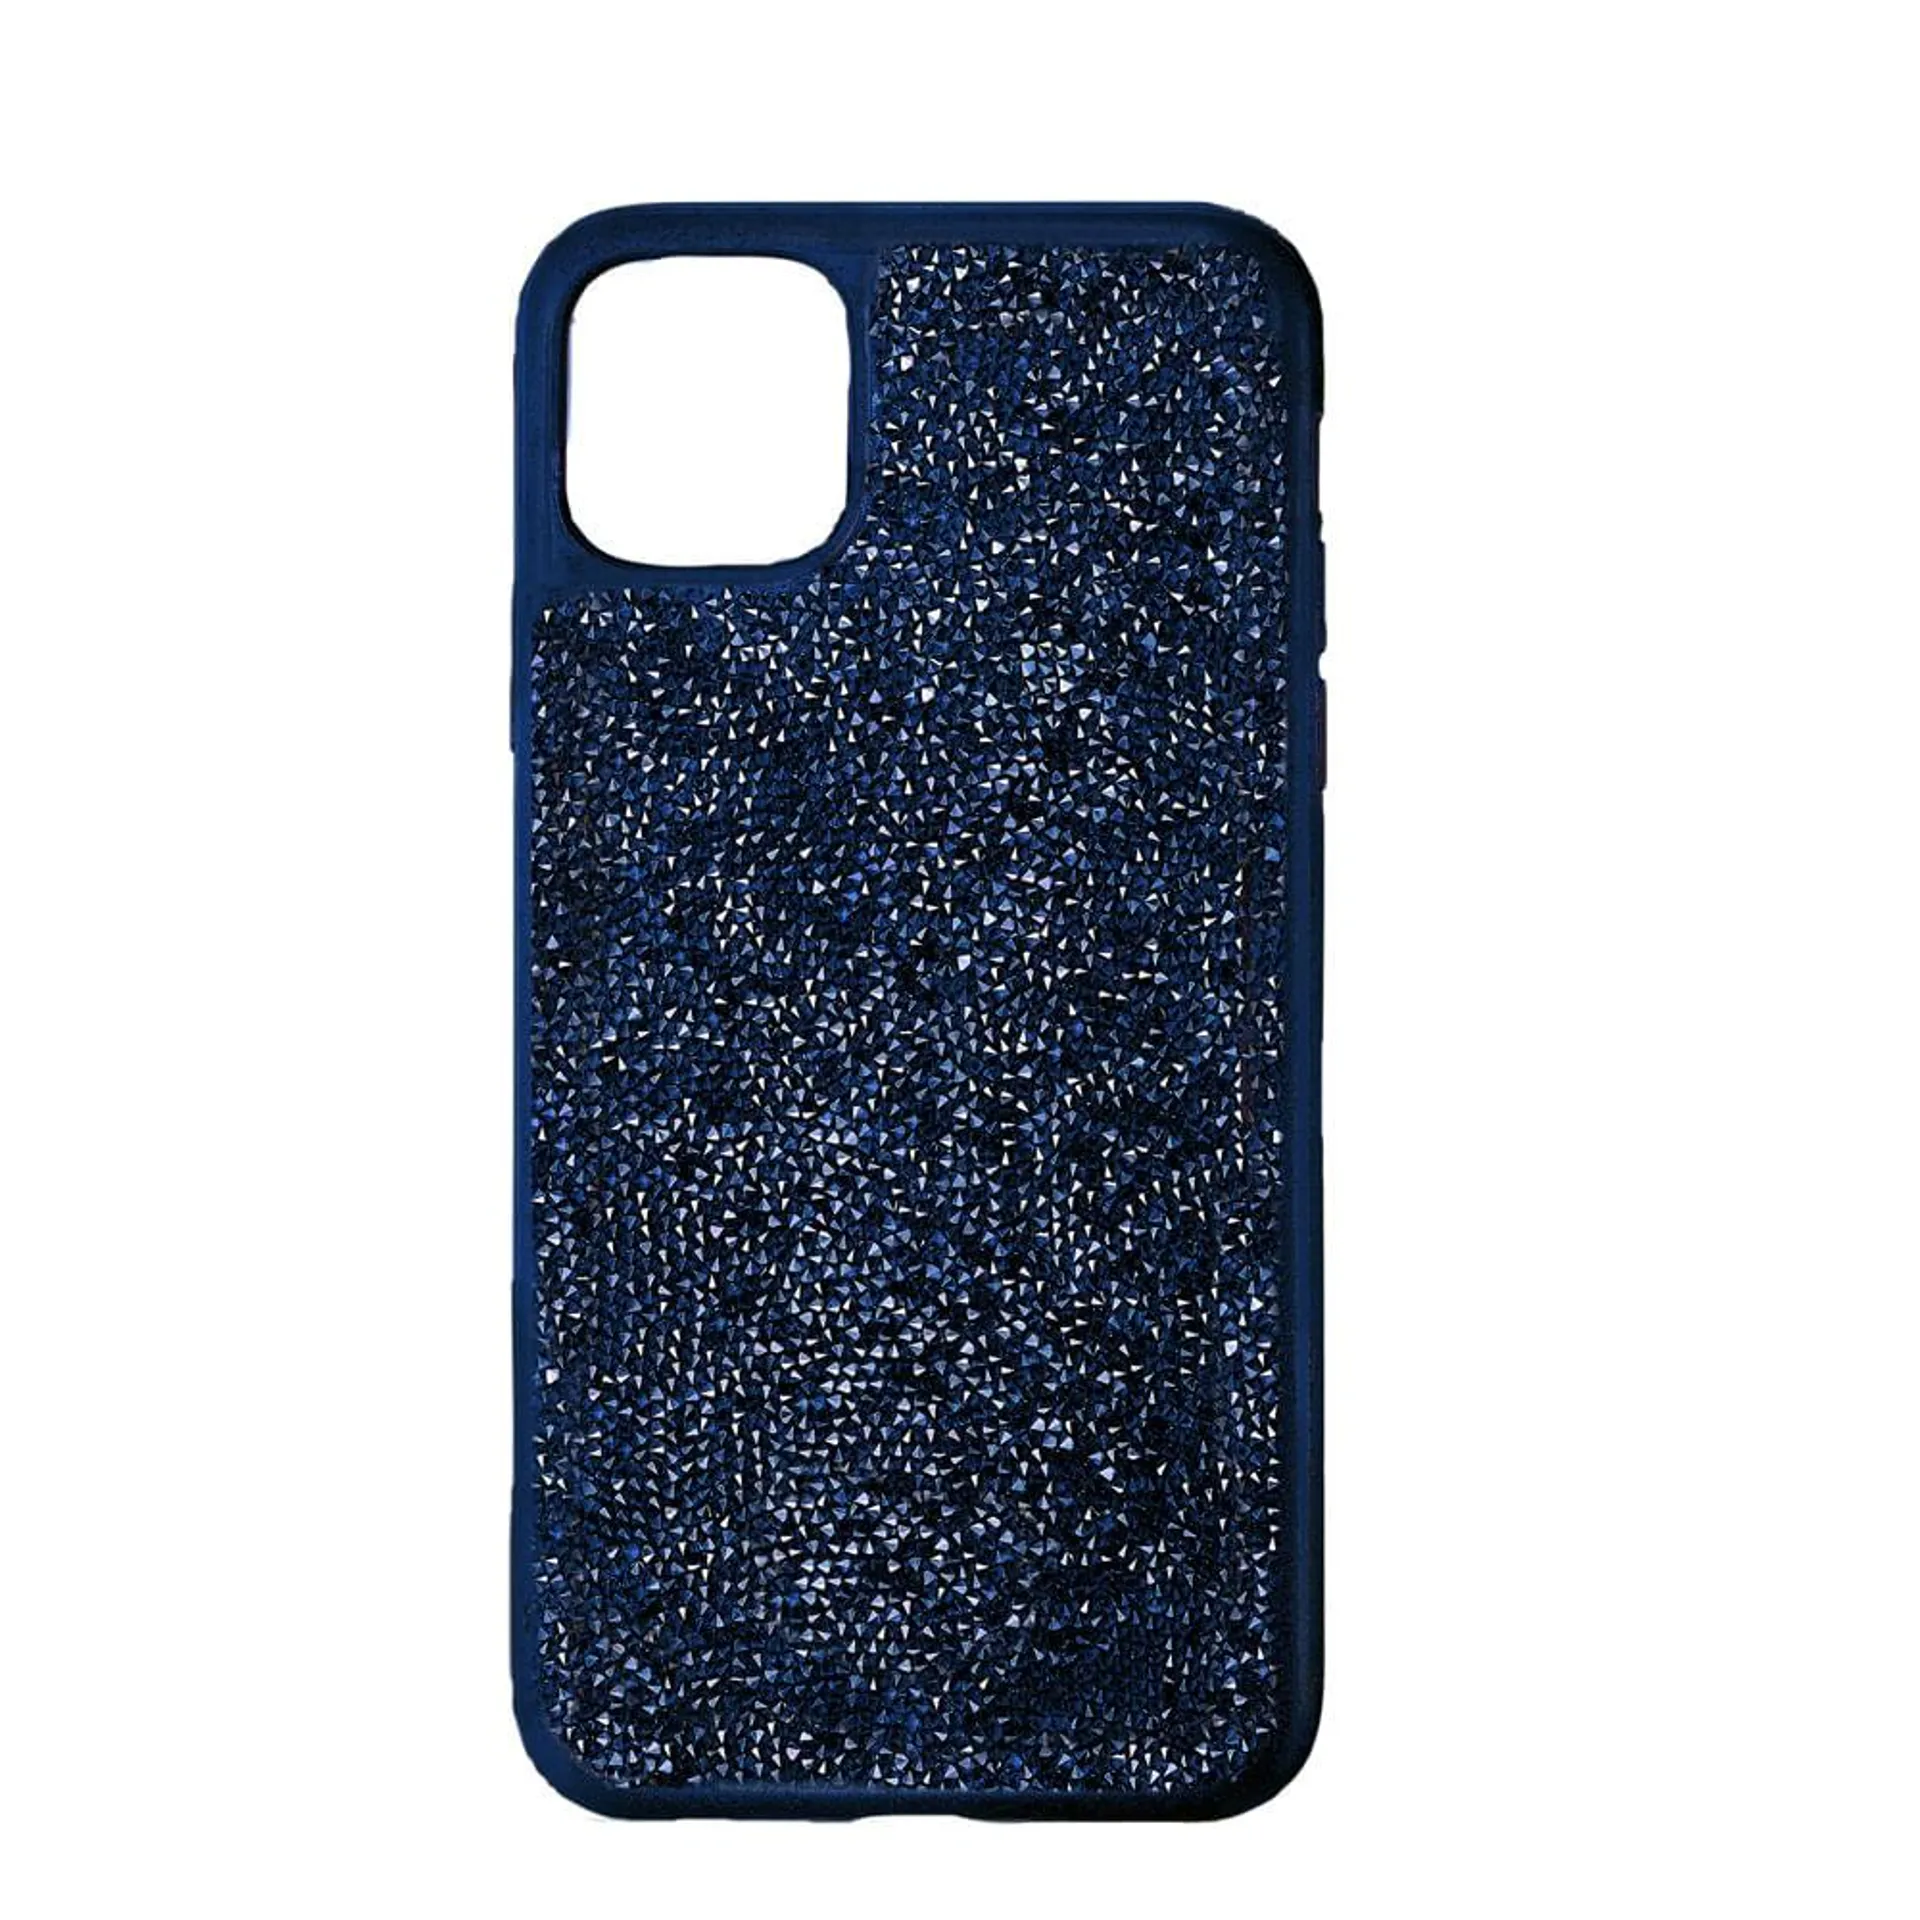 Funda Para Smartphone Con Protección Rígida Glam Rock, Iphone® 12 Mini, Azul